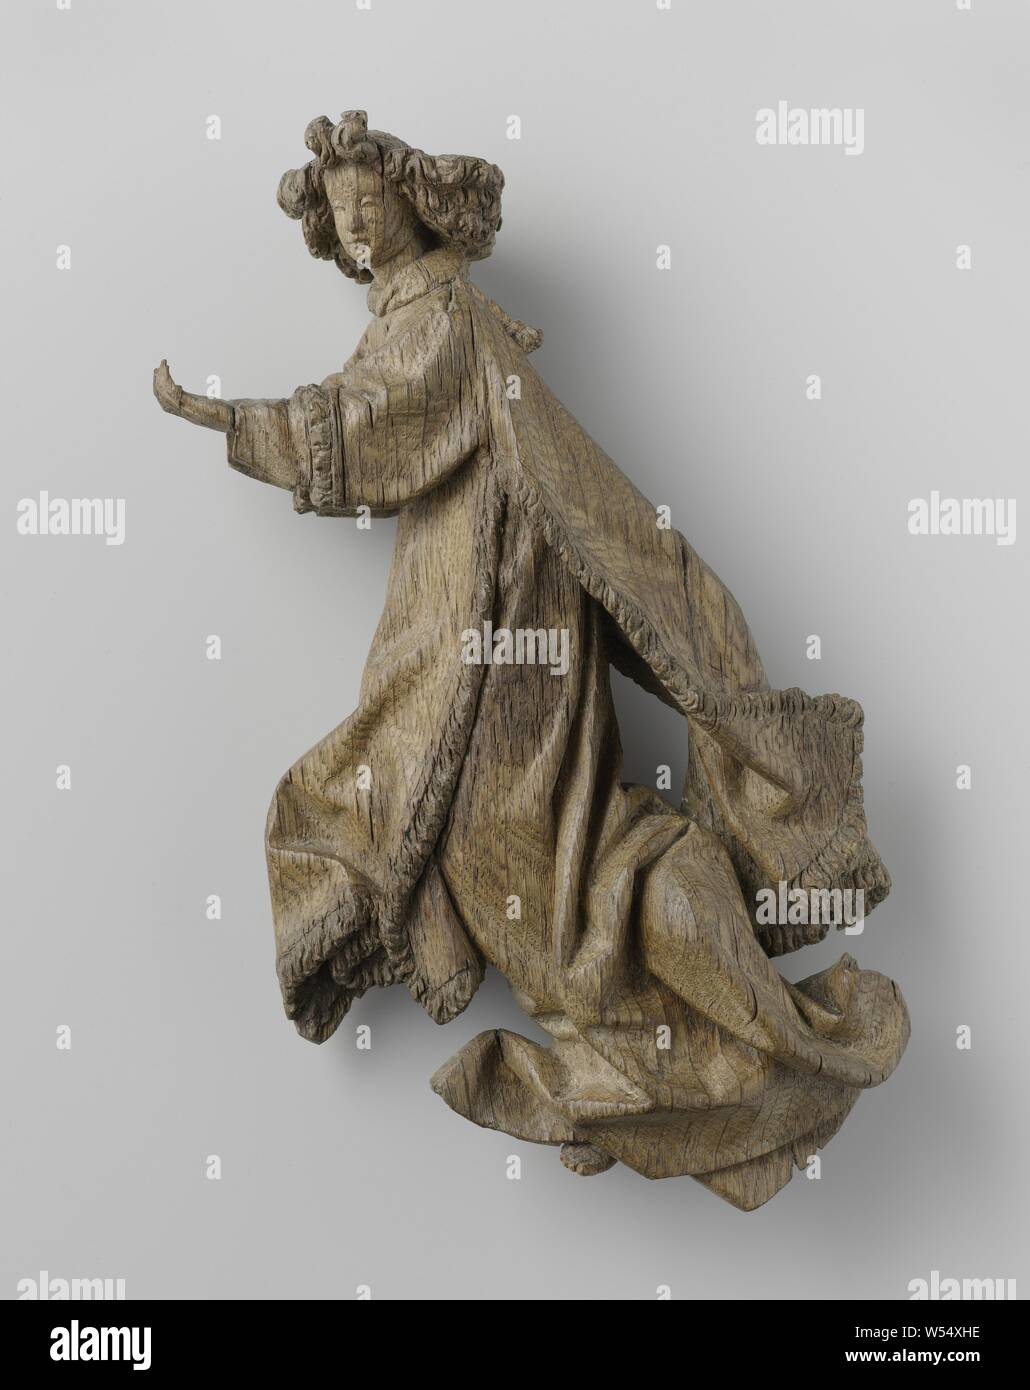 Angelo flottante, Angelo di profilo a sinistra, la testa a tre quarti al visualizzatore. Il piede sinistro, che è rivolta verso l'esterno, appare brevemente sotto l'albe, quello di destra è nascosta al di sotto di esso., Bruxelles, c. 1490, Rovere (legno), h 27 cm Foto Stock